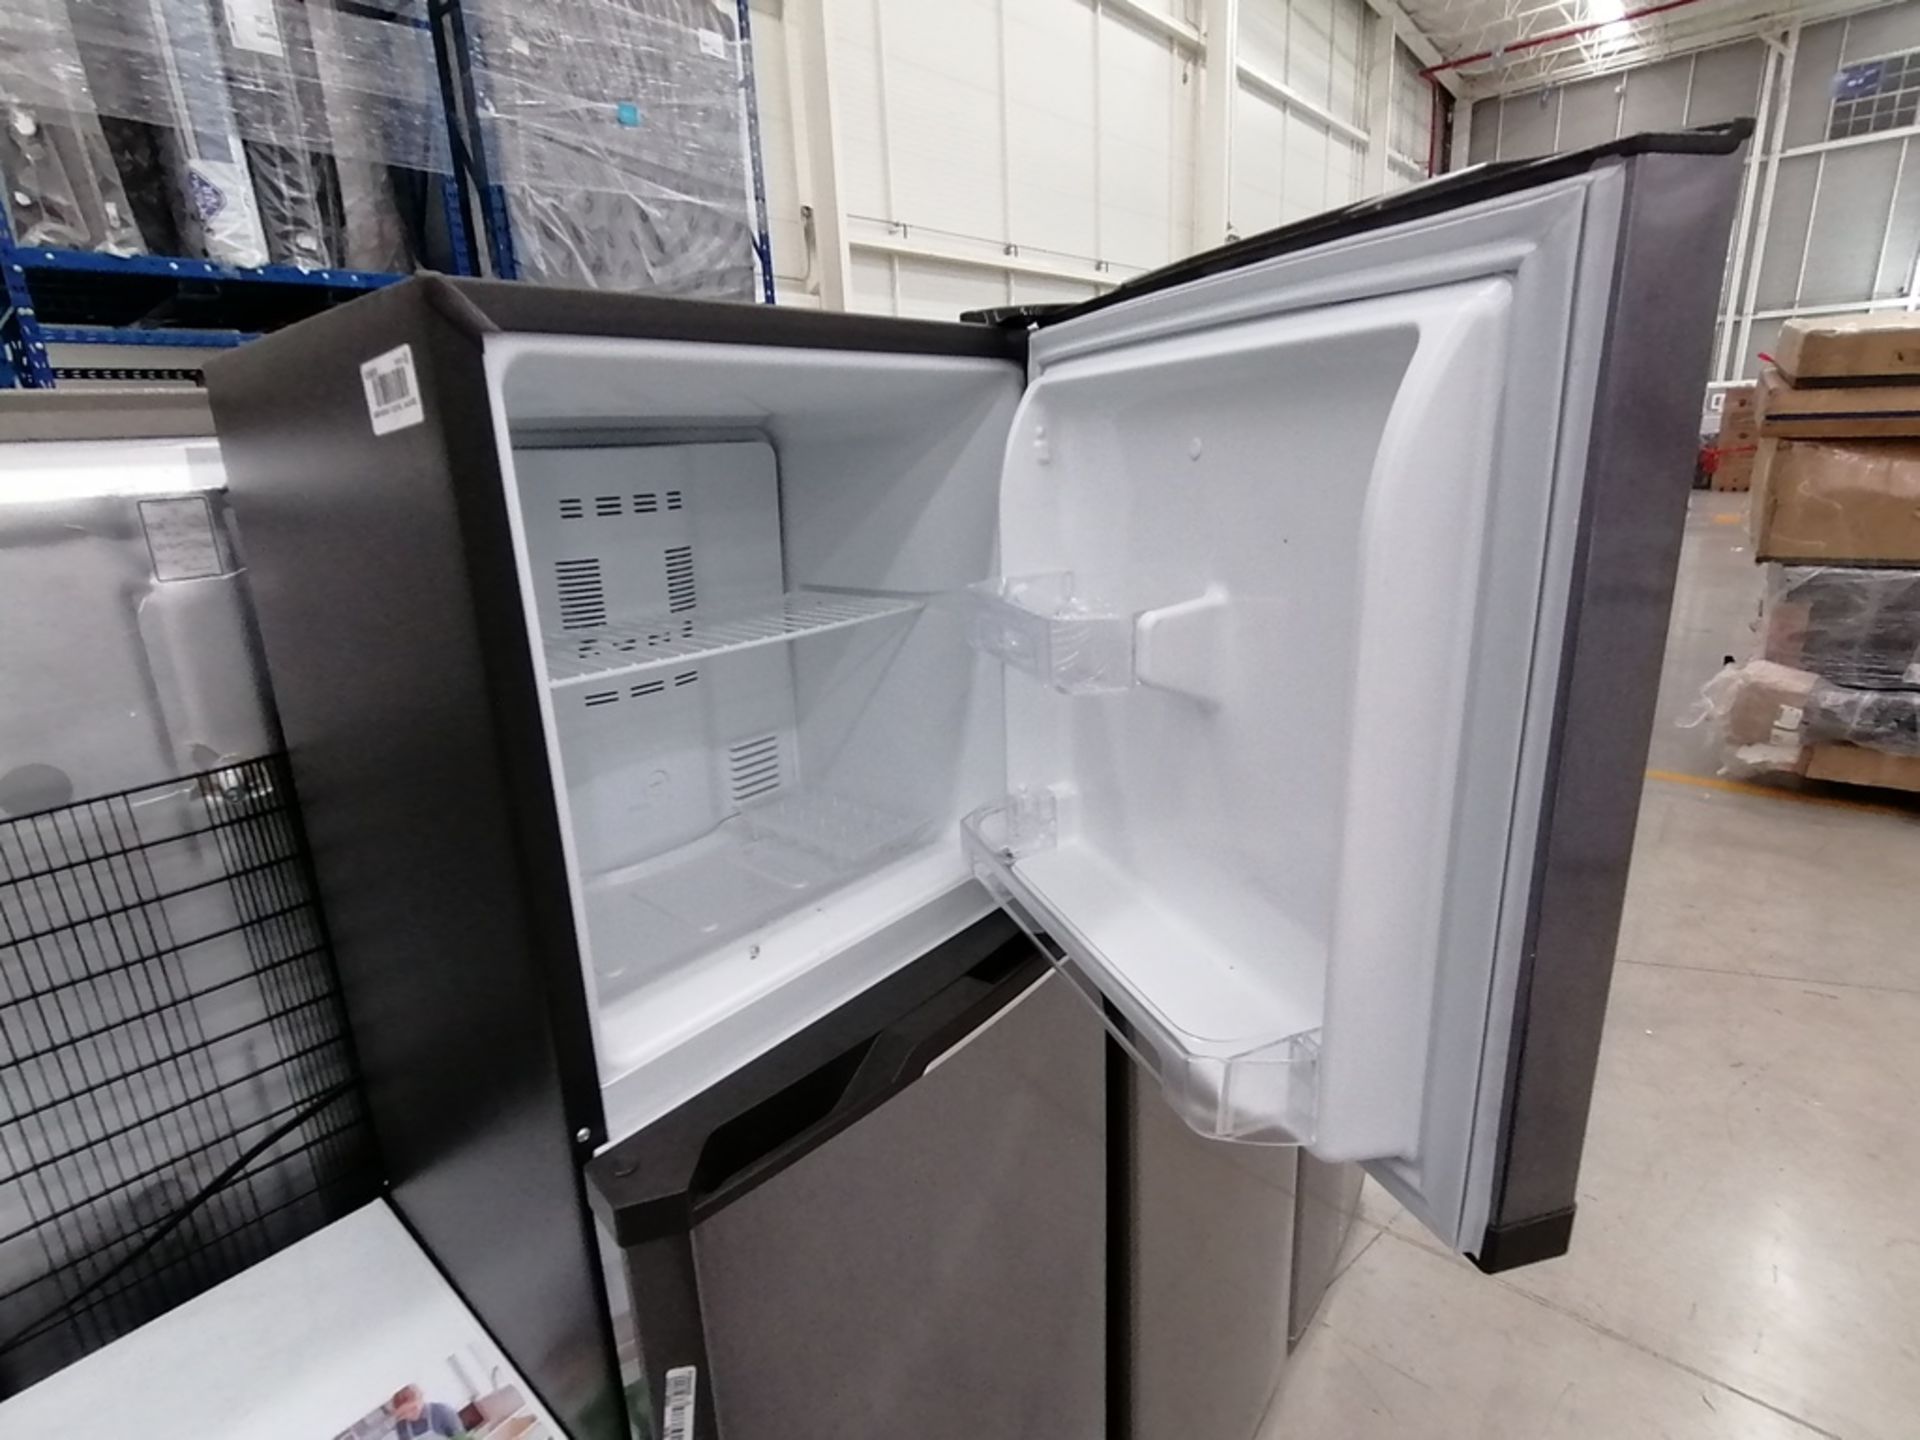 Lote de 2 refrigeradores incluye: 1 Refrigerador, Marca Mabe, Modelo RMA1025VNX, Serie 2110B623189, - Image 12 of 17